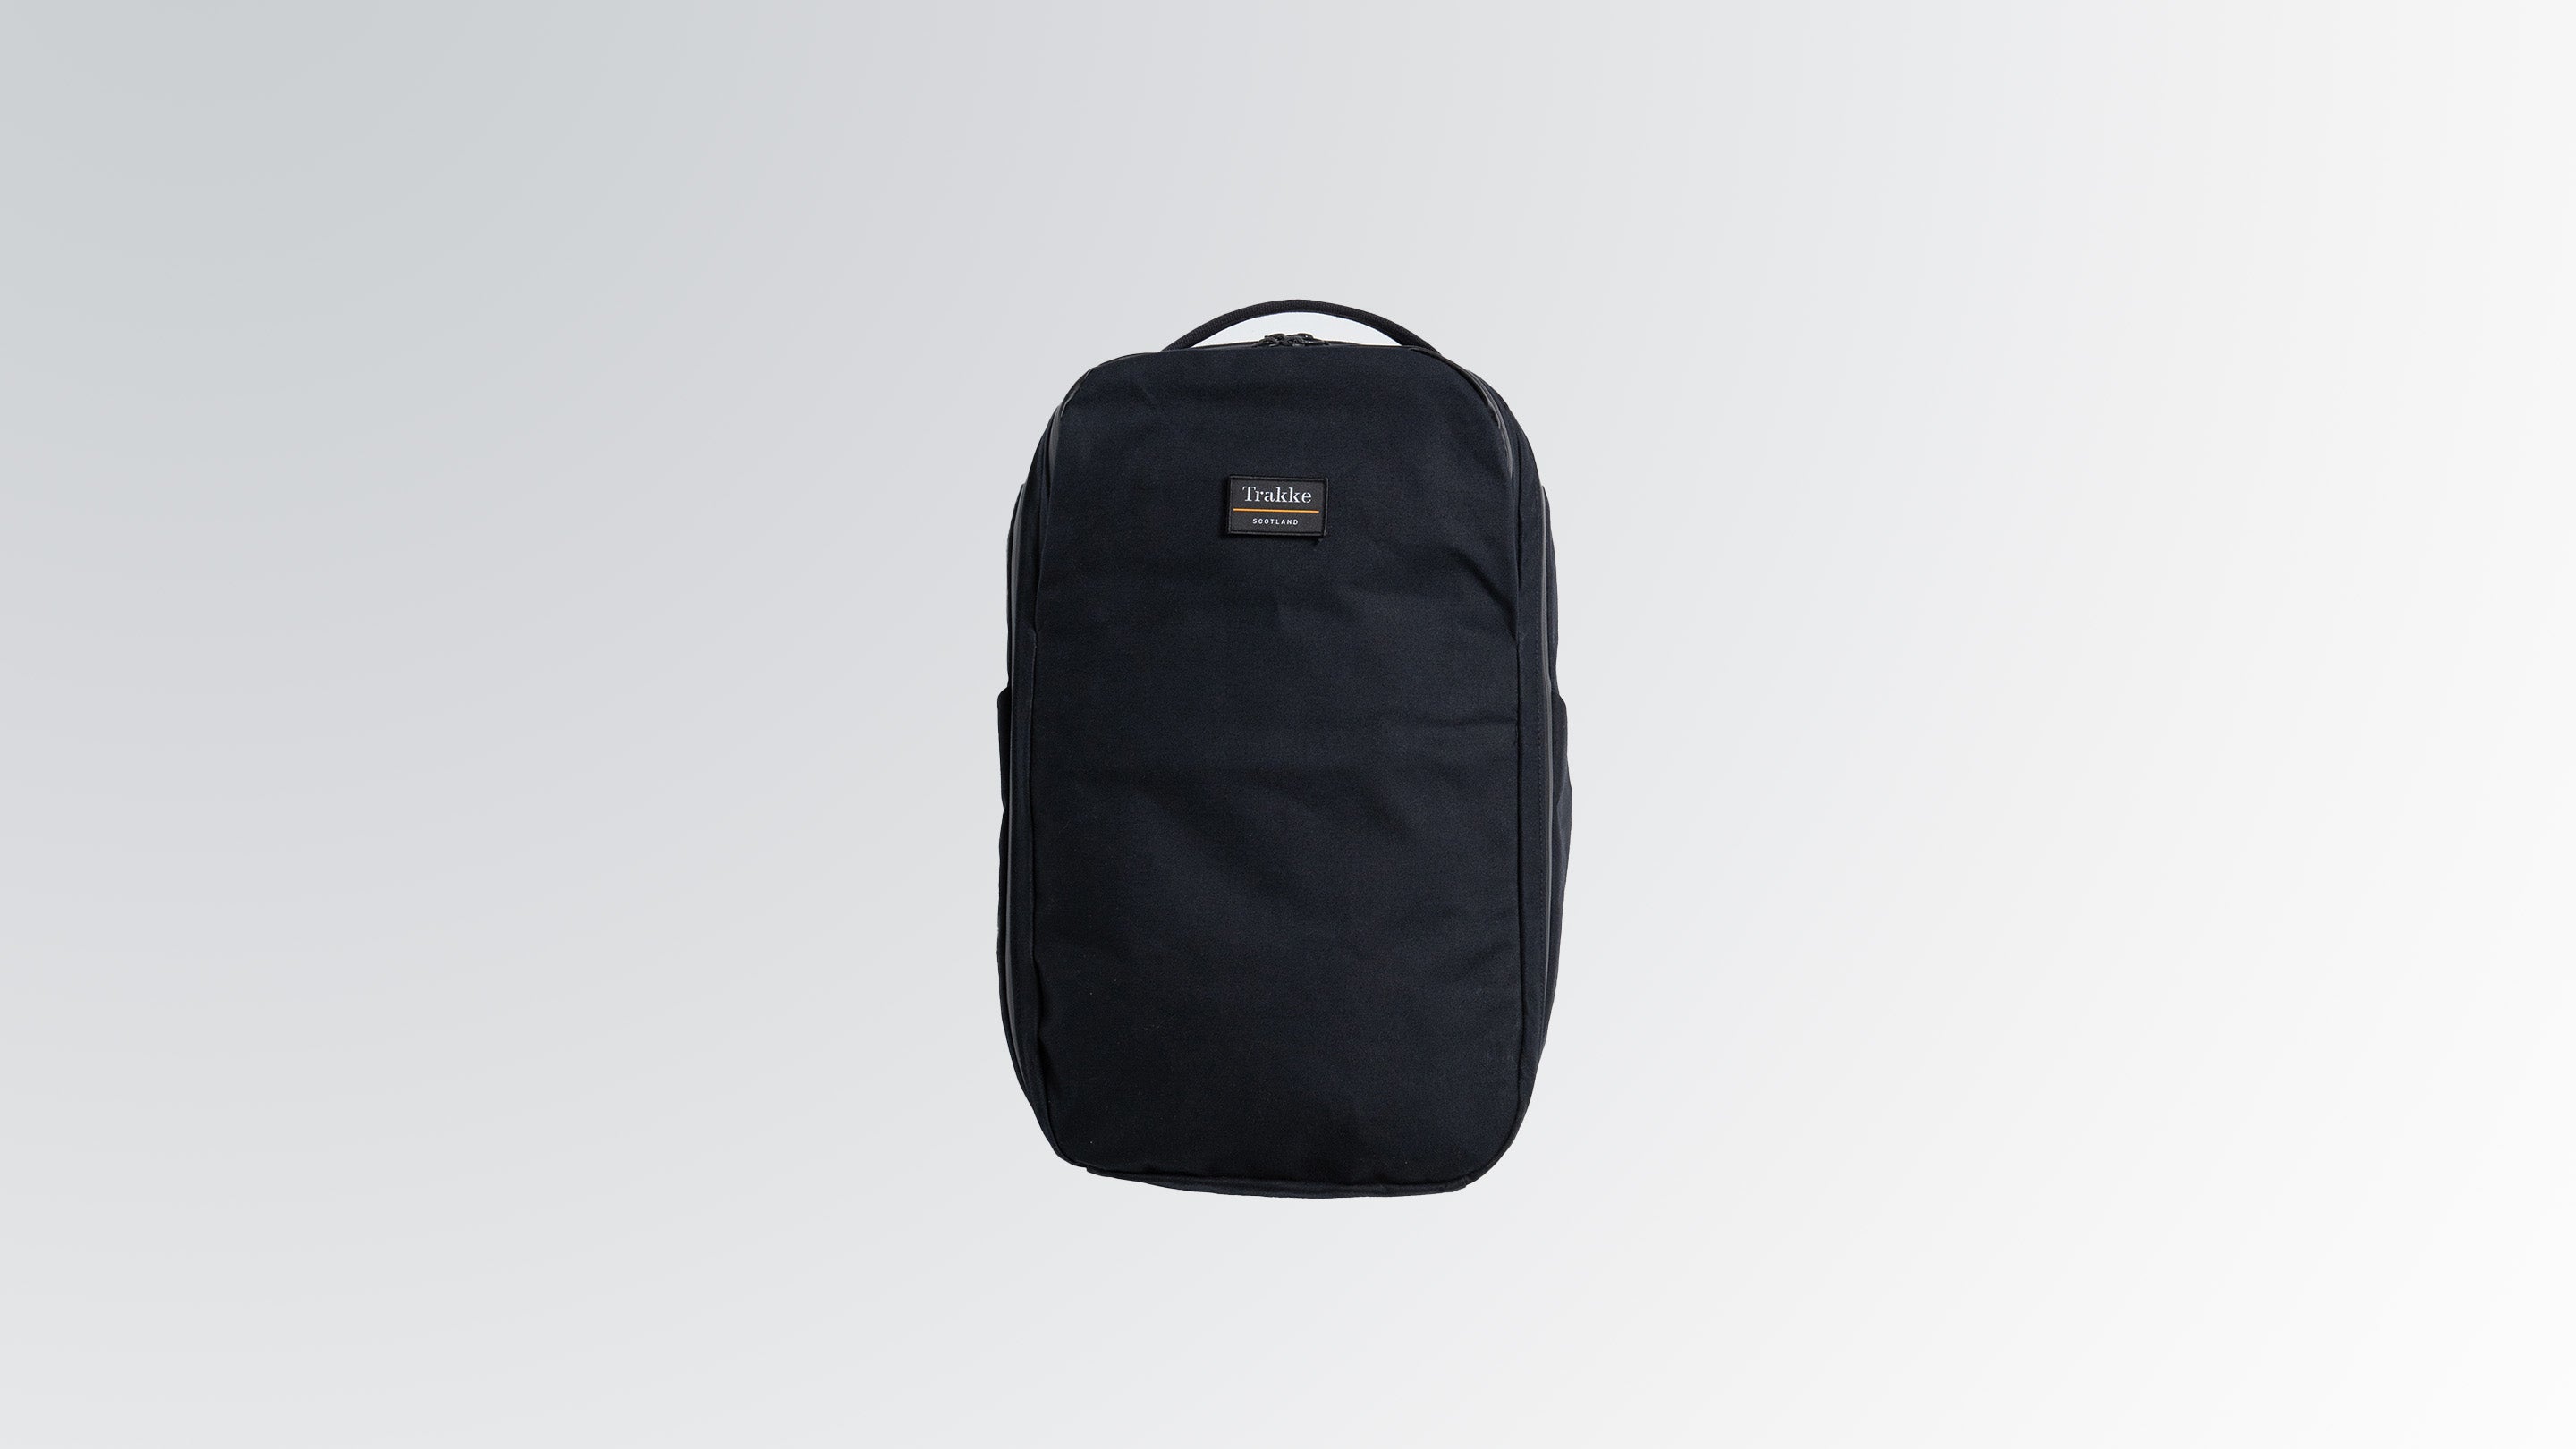 Storr 25L Travel Backpack – Carry-On Backpack | Trakke